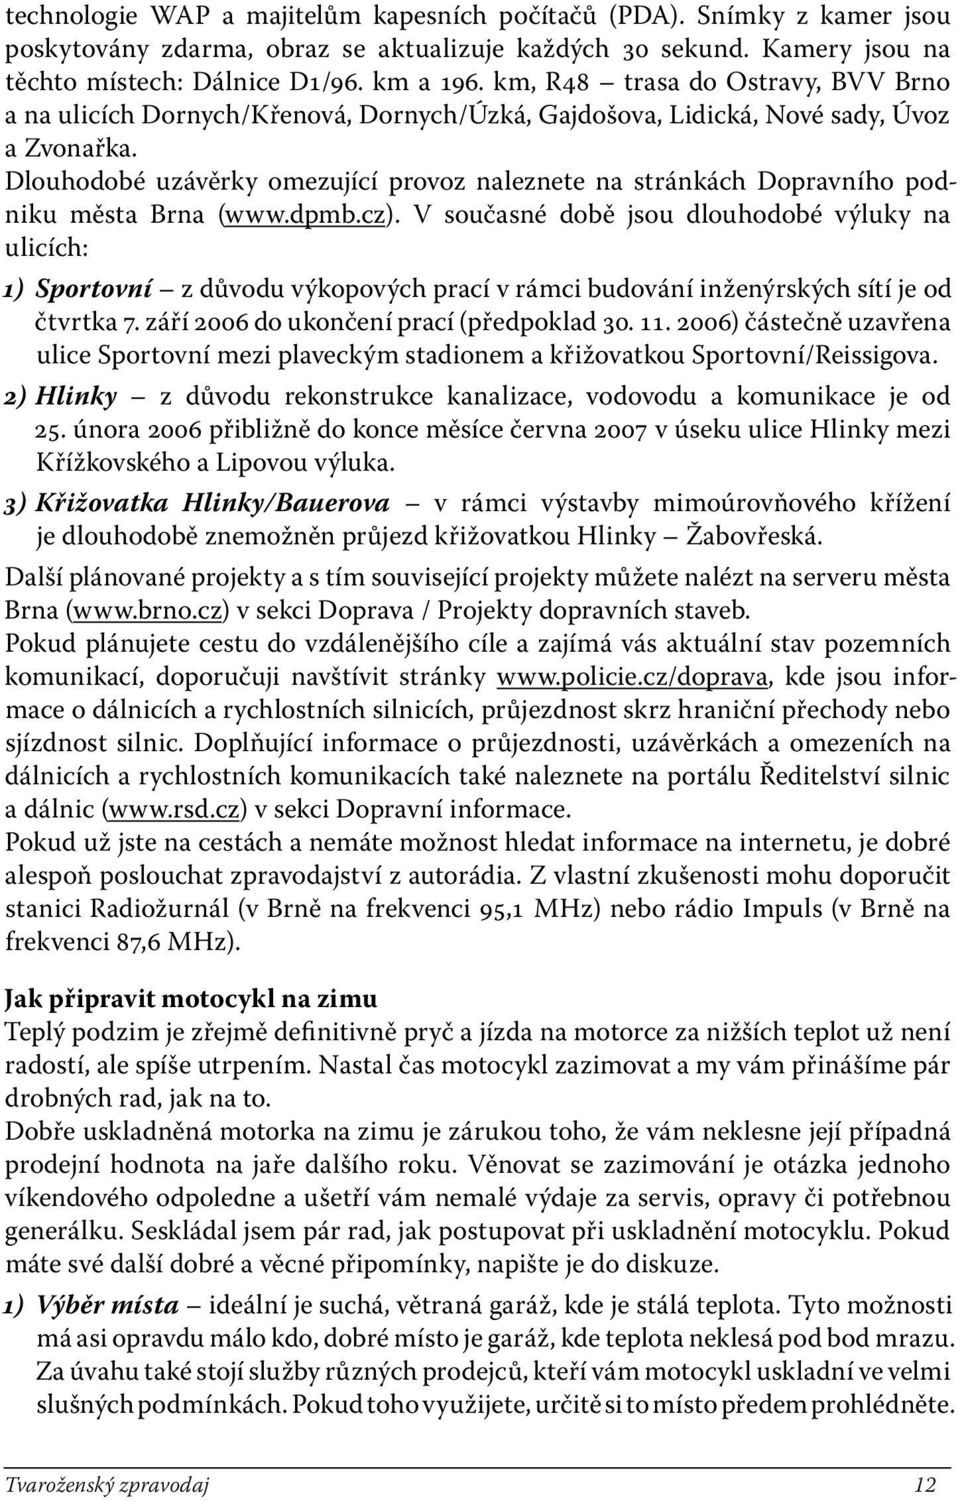 Dlouhodobé uzávěrky omezující provoz naleznete na stránkách Dopravního podniku města Brna (www.dpmb.cz).